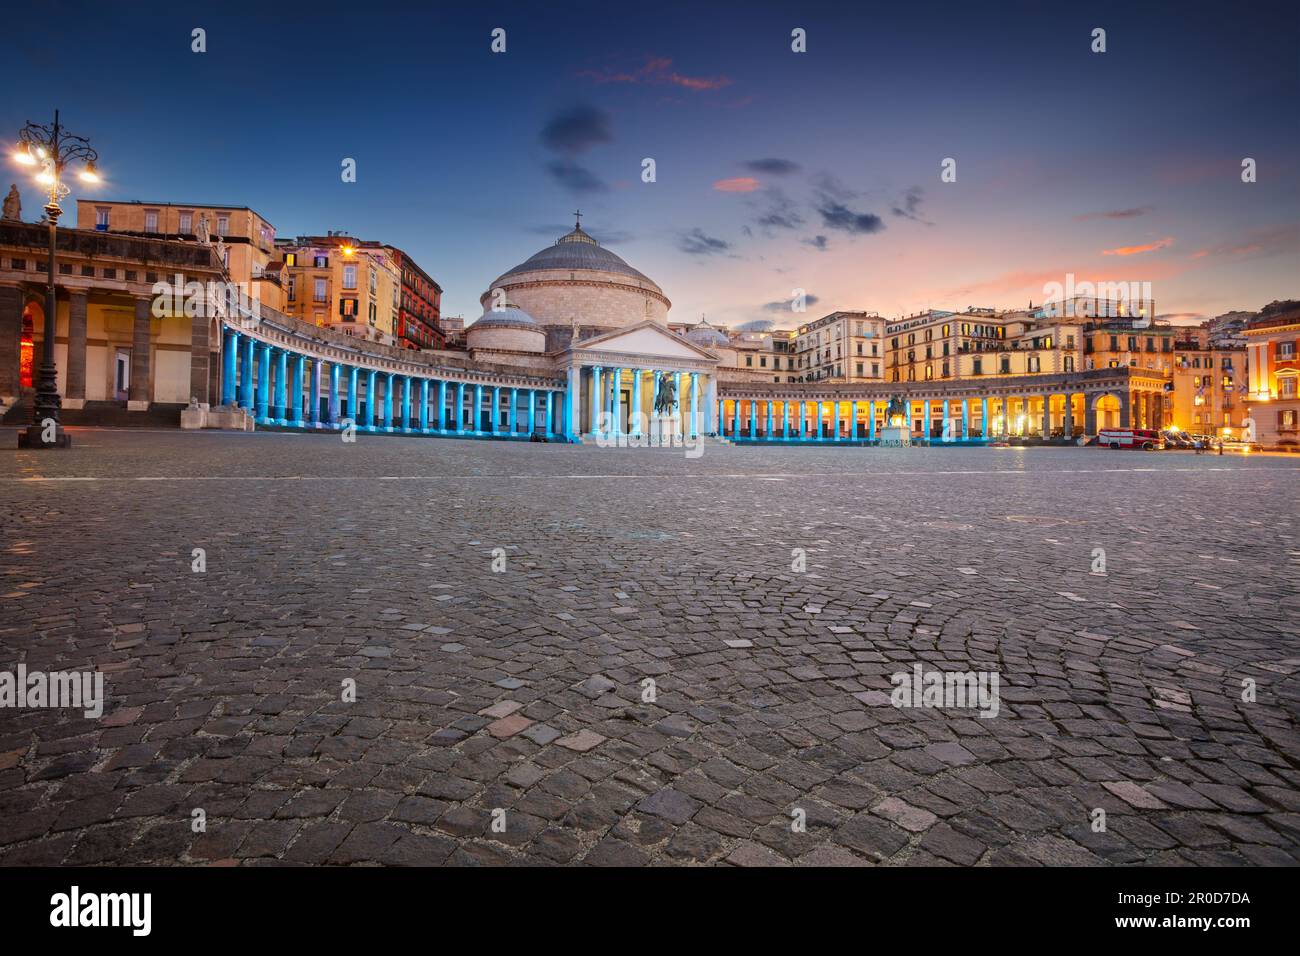 Napoli, Italia. Immagine del paesaggio urbano di Napoli, Italia con vista sulla grande piazza del Plebiscito al tramonto. Foto Stock